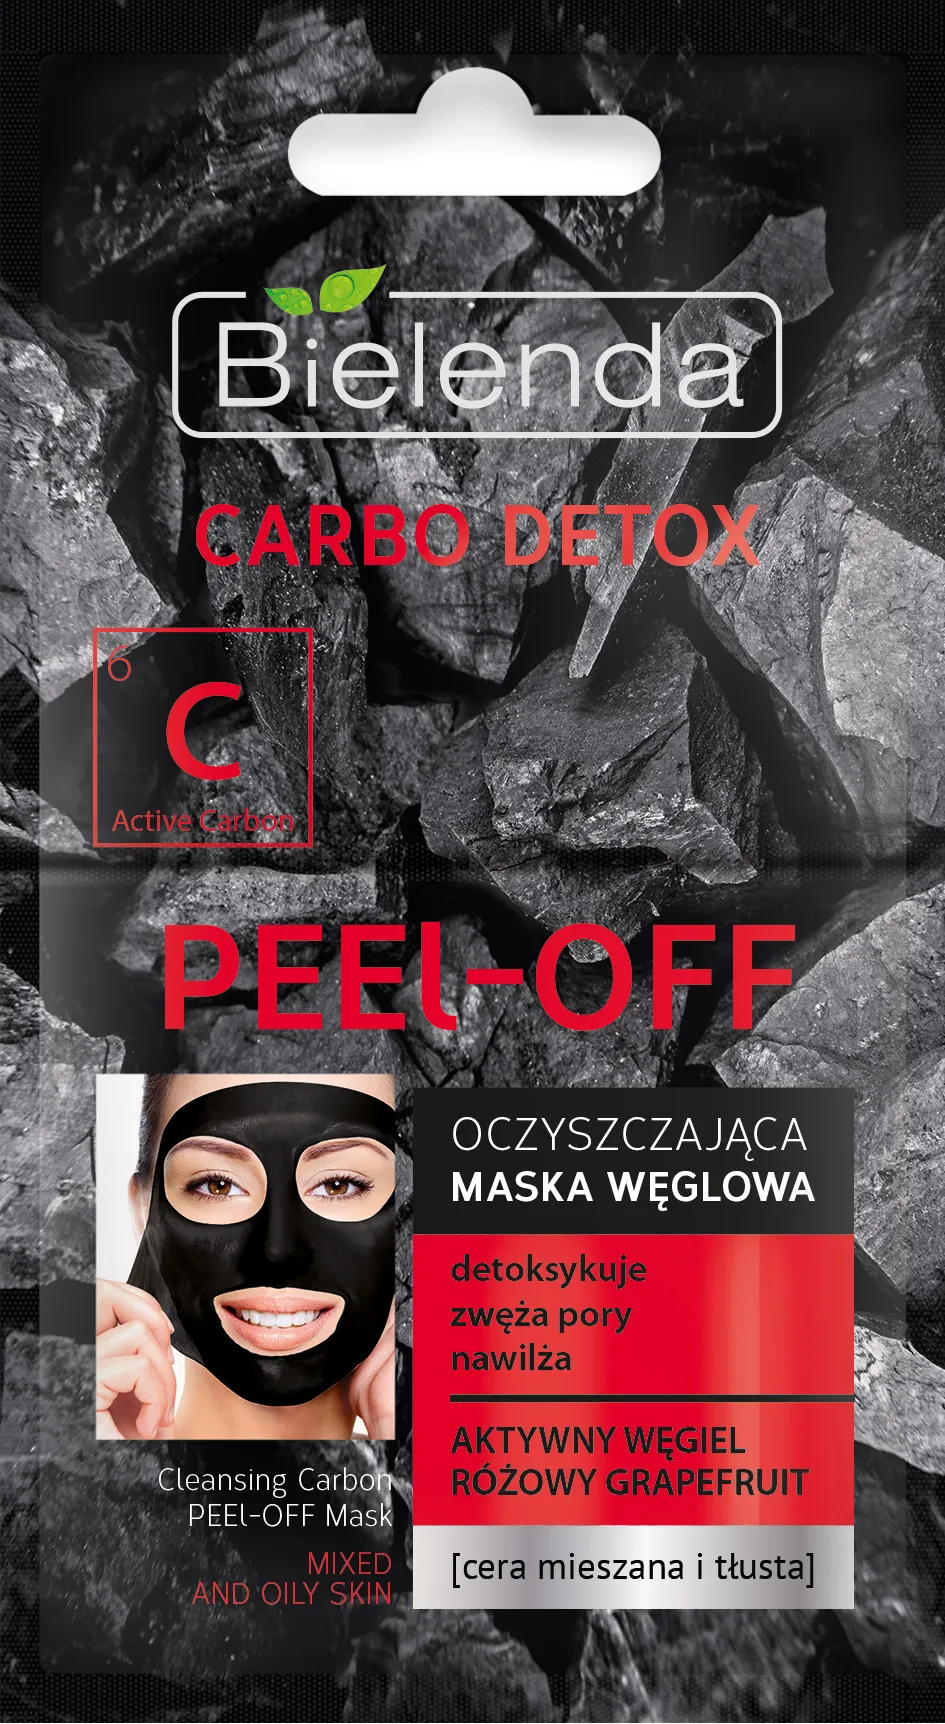 Bielenda Carbo Detox oczyszczająca maska węglowa PEEL-OFF, 2 x 6 g